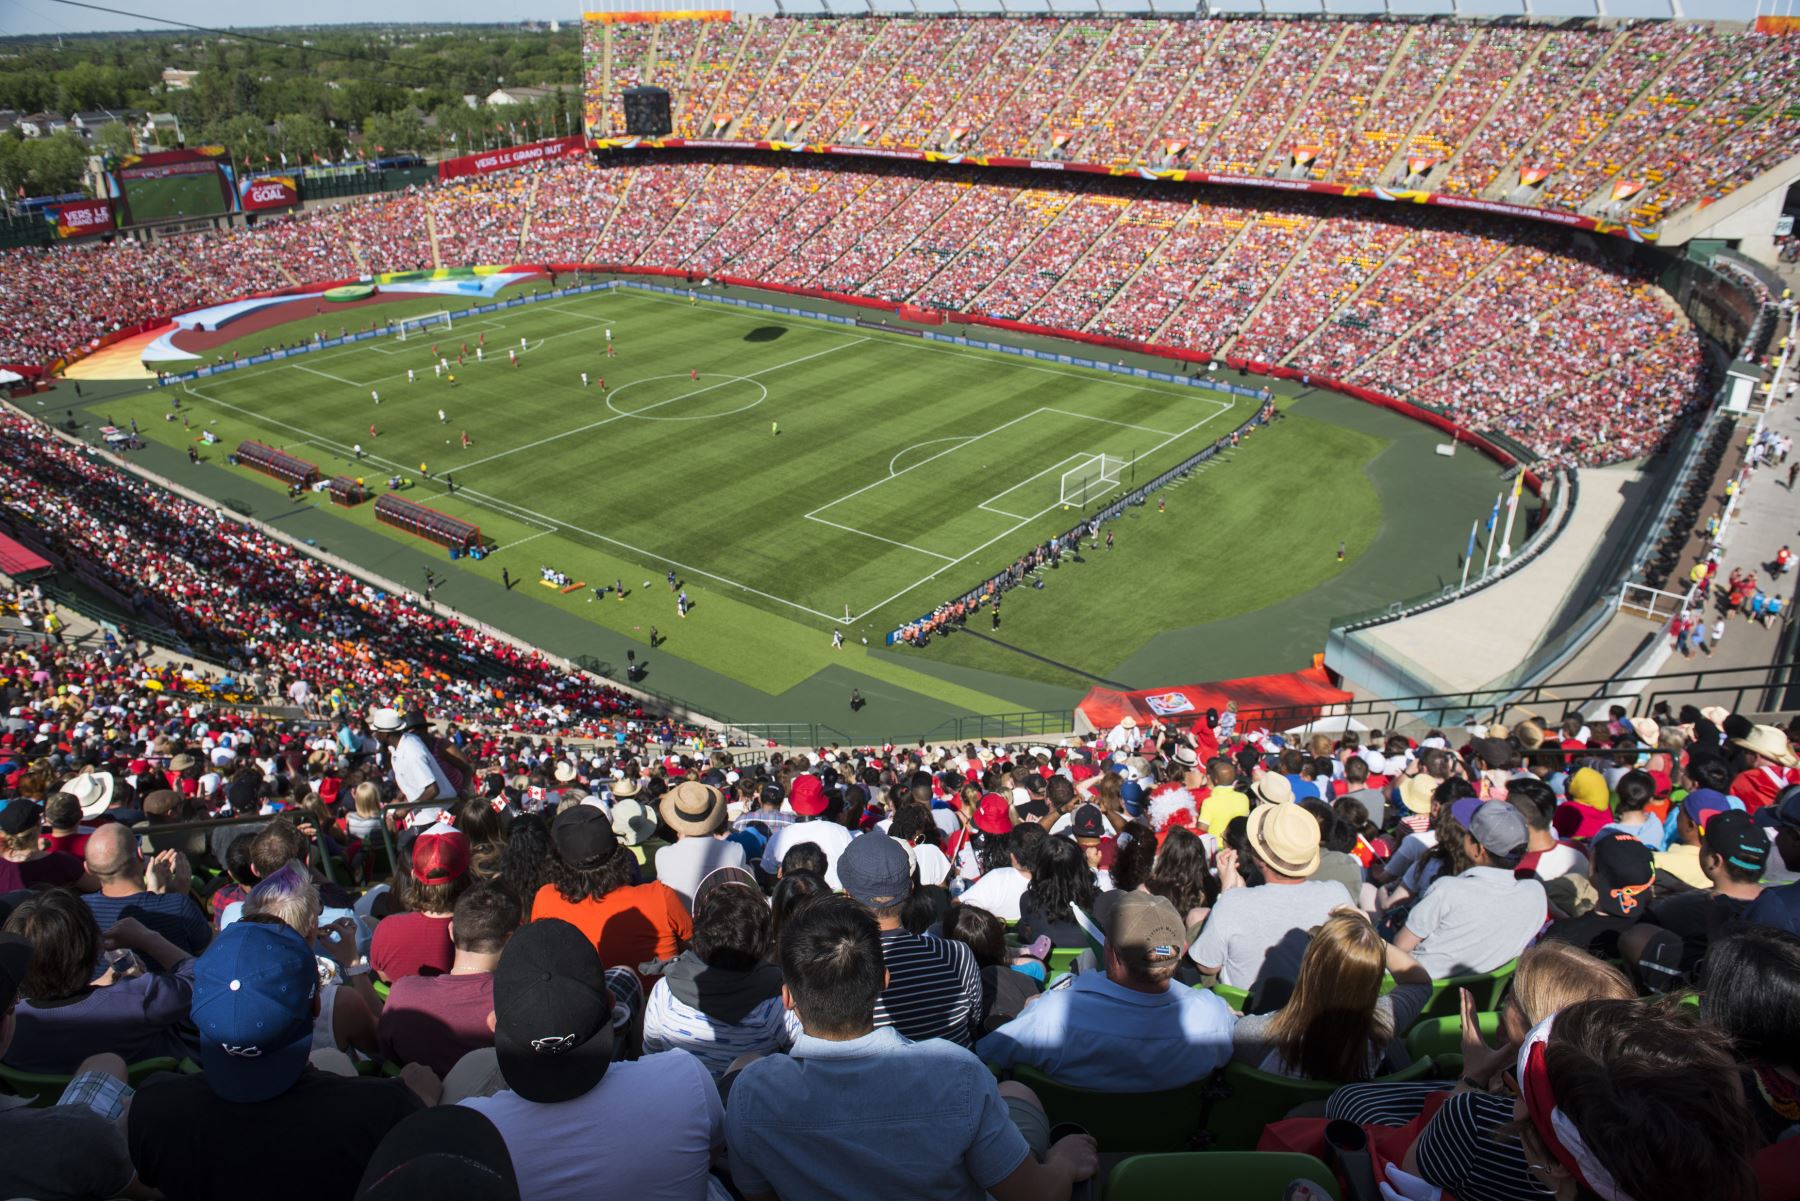 La FIFA sigues inspeccionando las ciudades candidatas para albergar la Copa del Mundo 2026